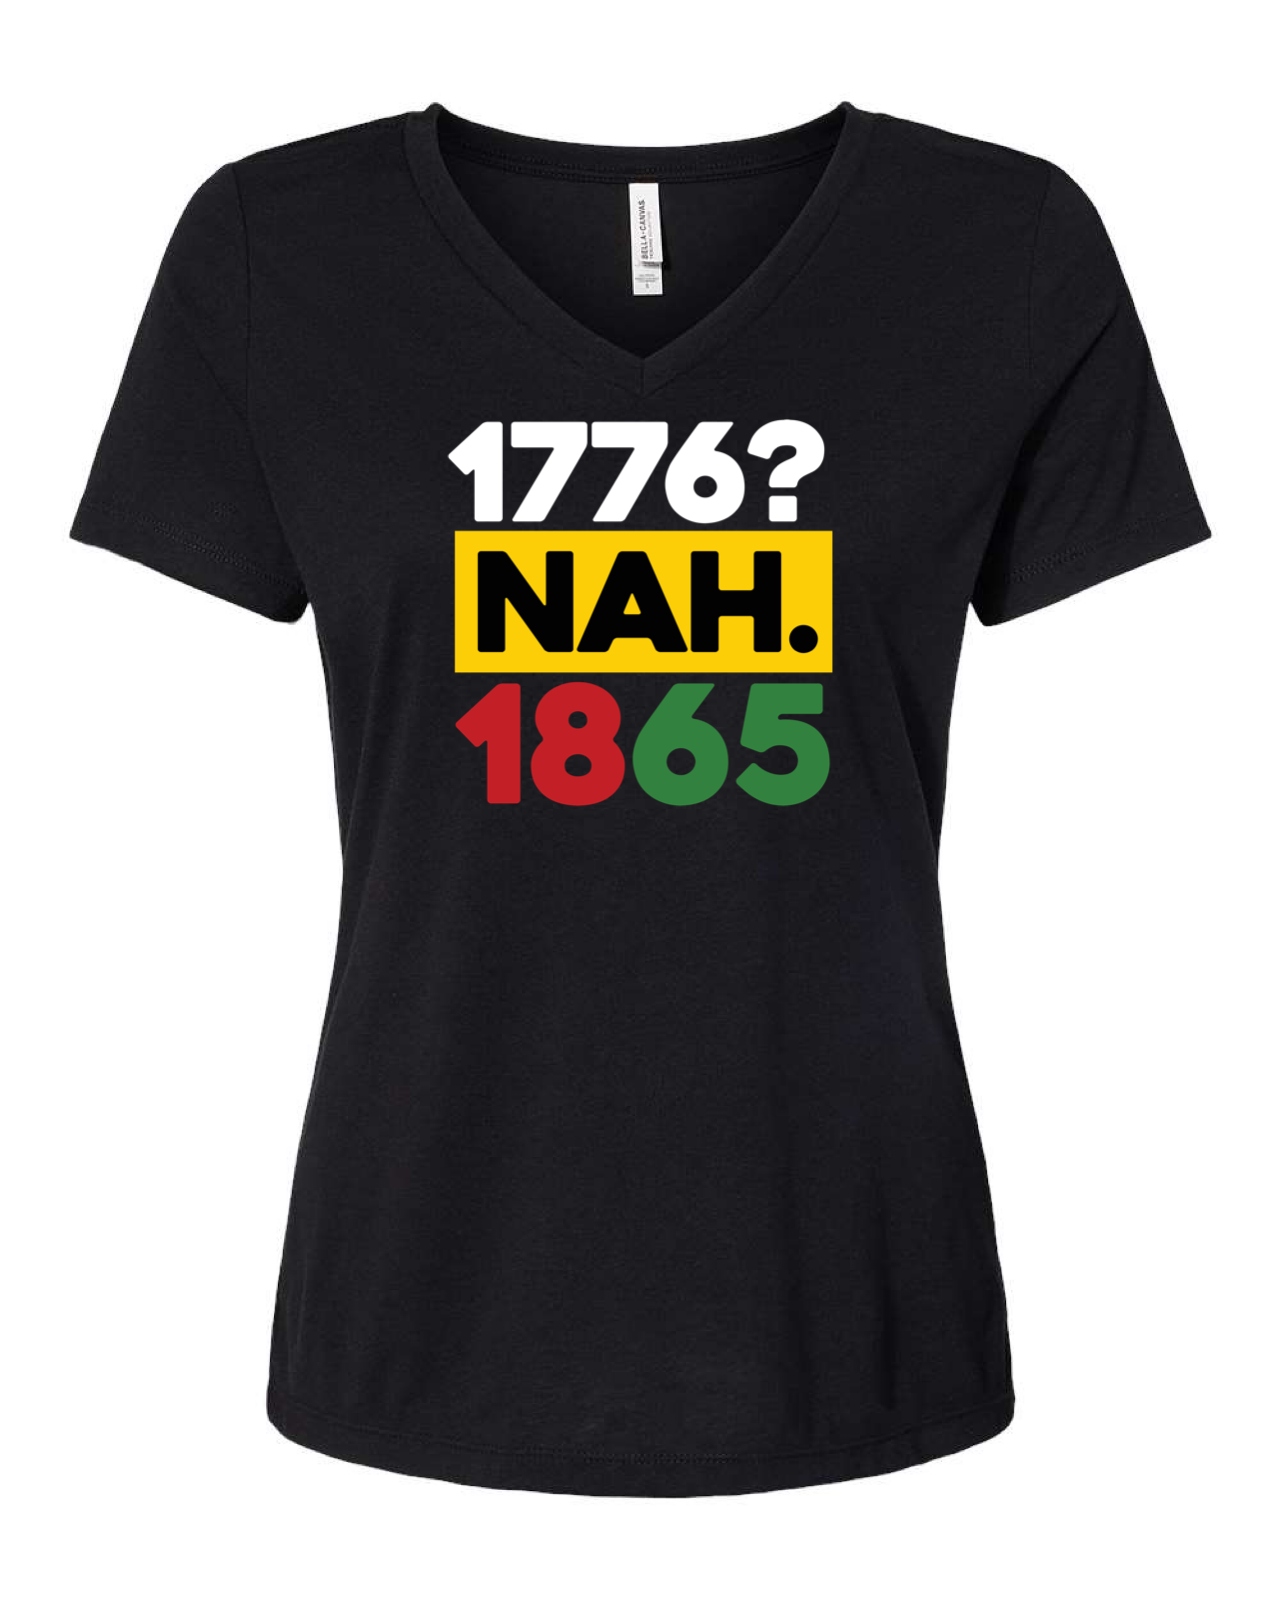 Juneteenth  July 4 shirt for black women - 1776 nah 1865